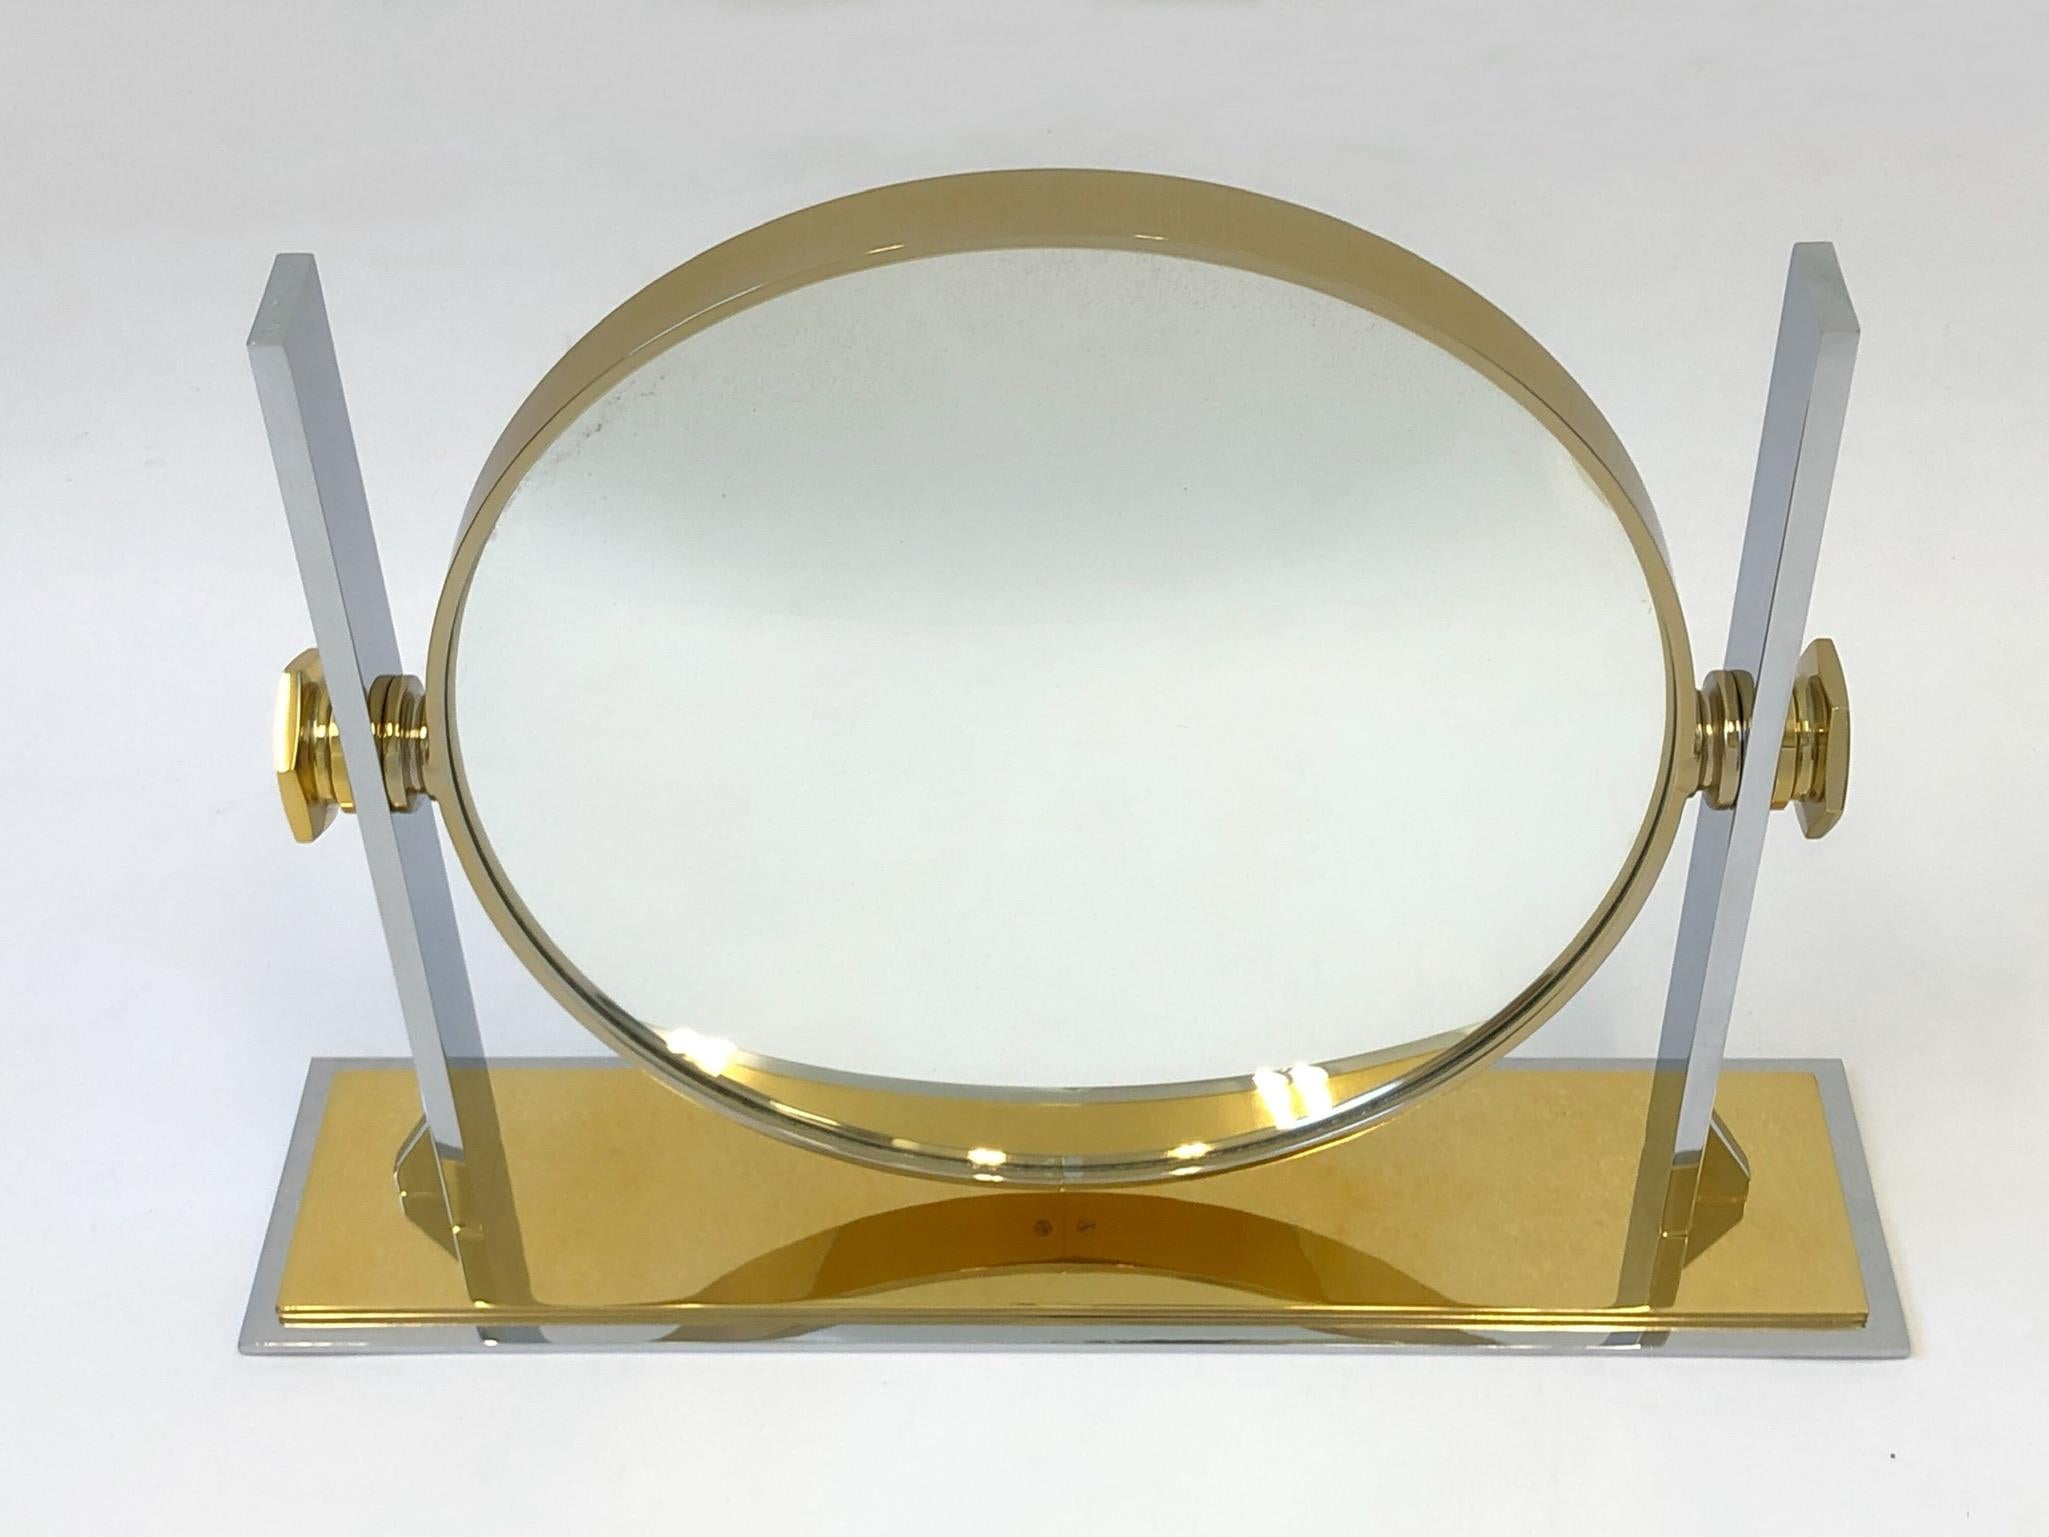 American Brass and Nickel Vanity Mirror by Karl Springer 